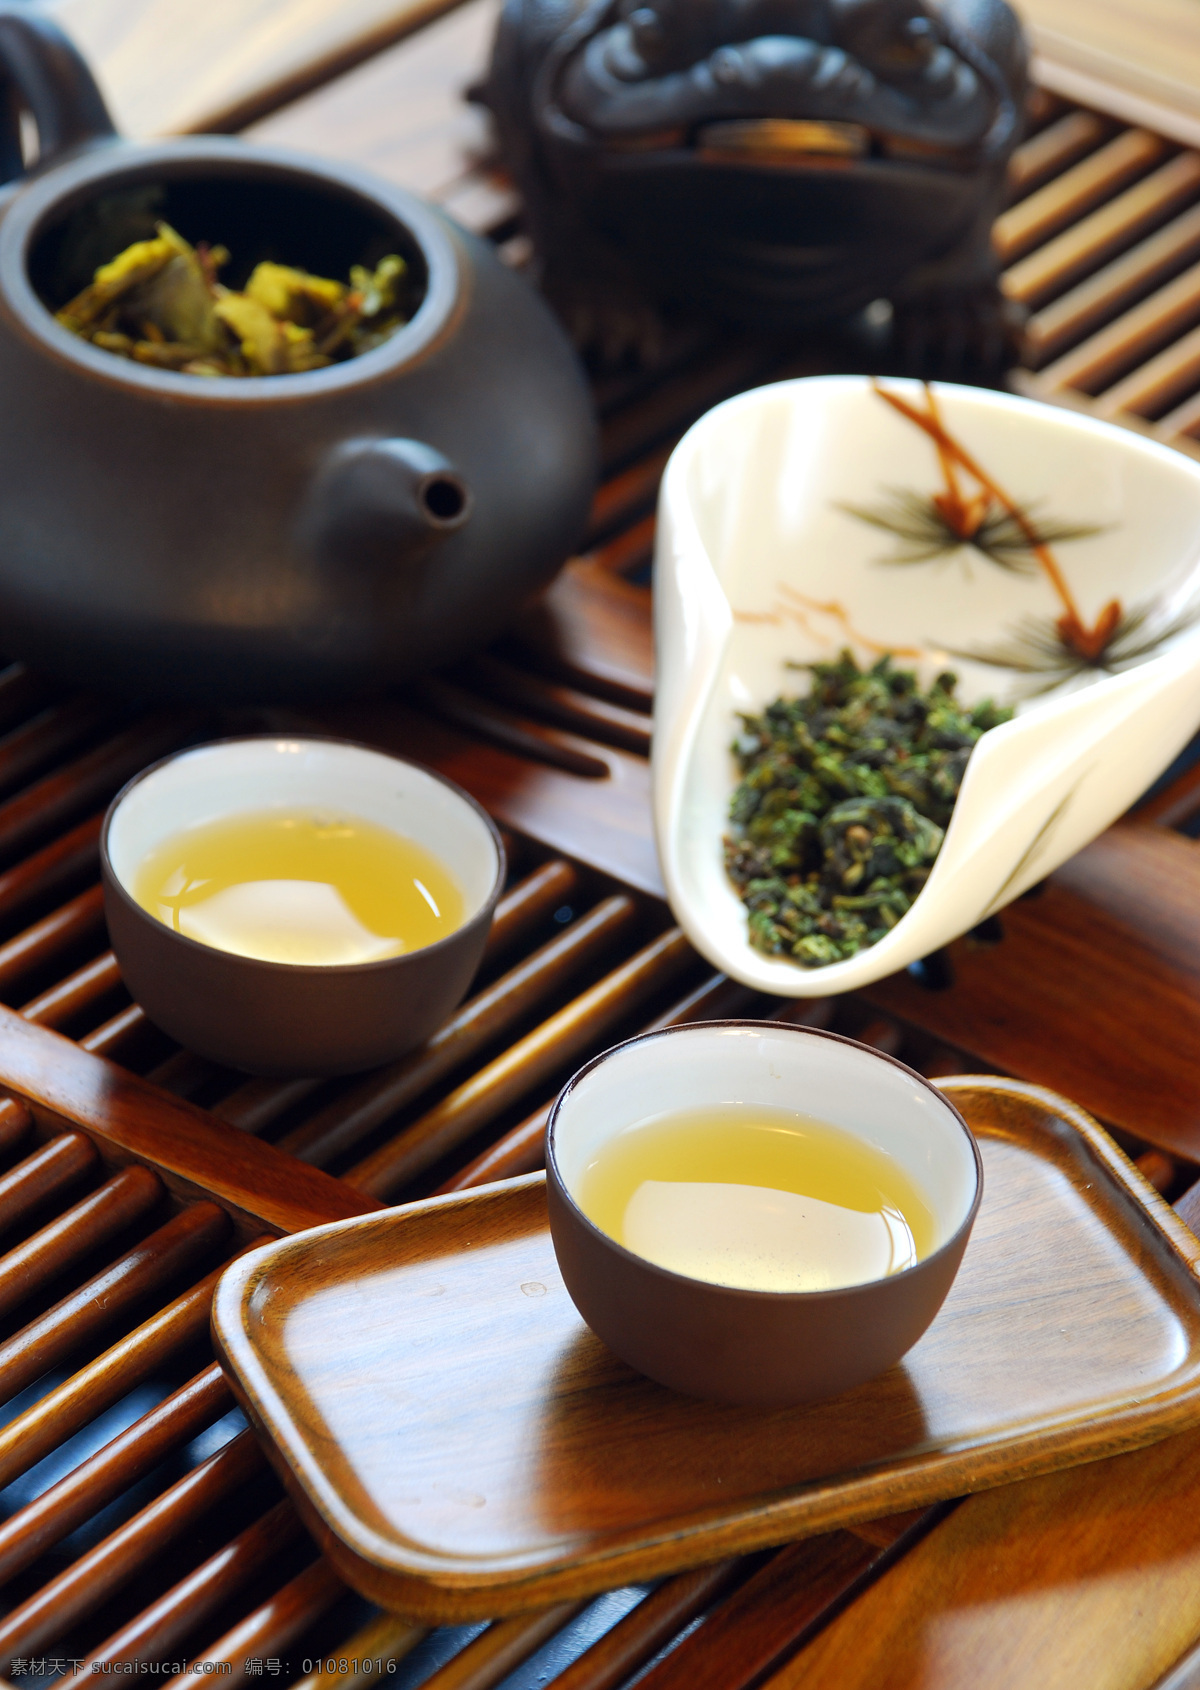 茶水 茶壶 茶杯 茶文化 茶具 茶楼 绿茶 茶叶 饮料酒水 餐饮美食